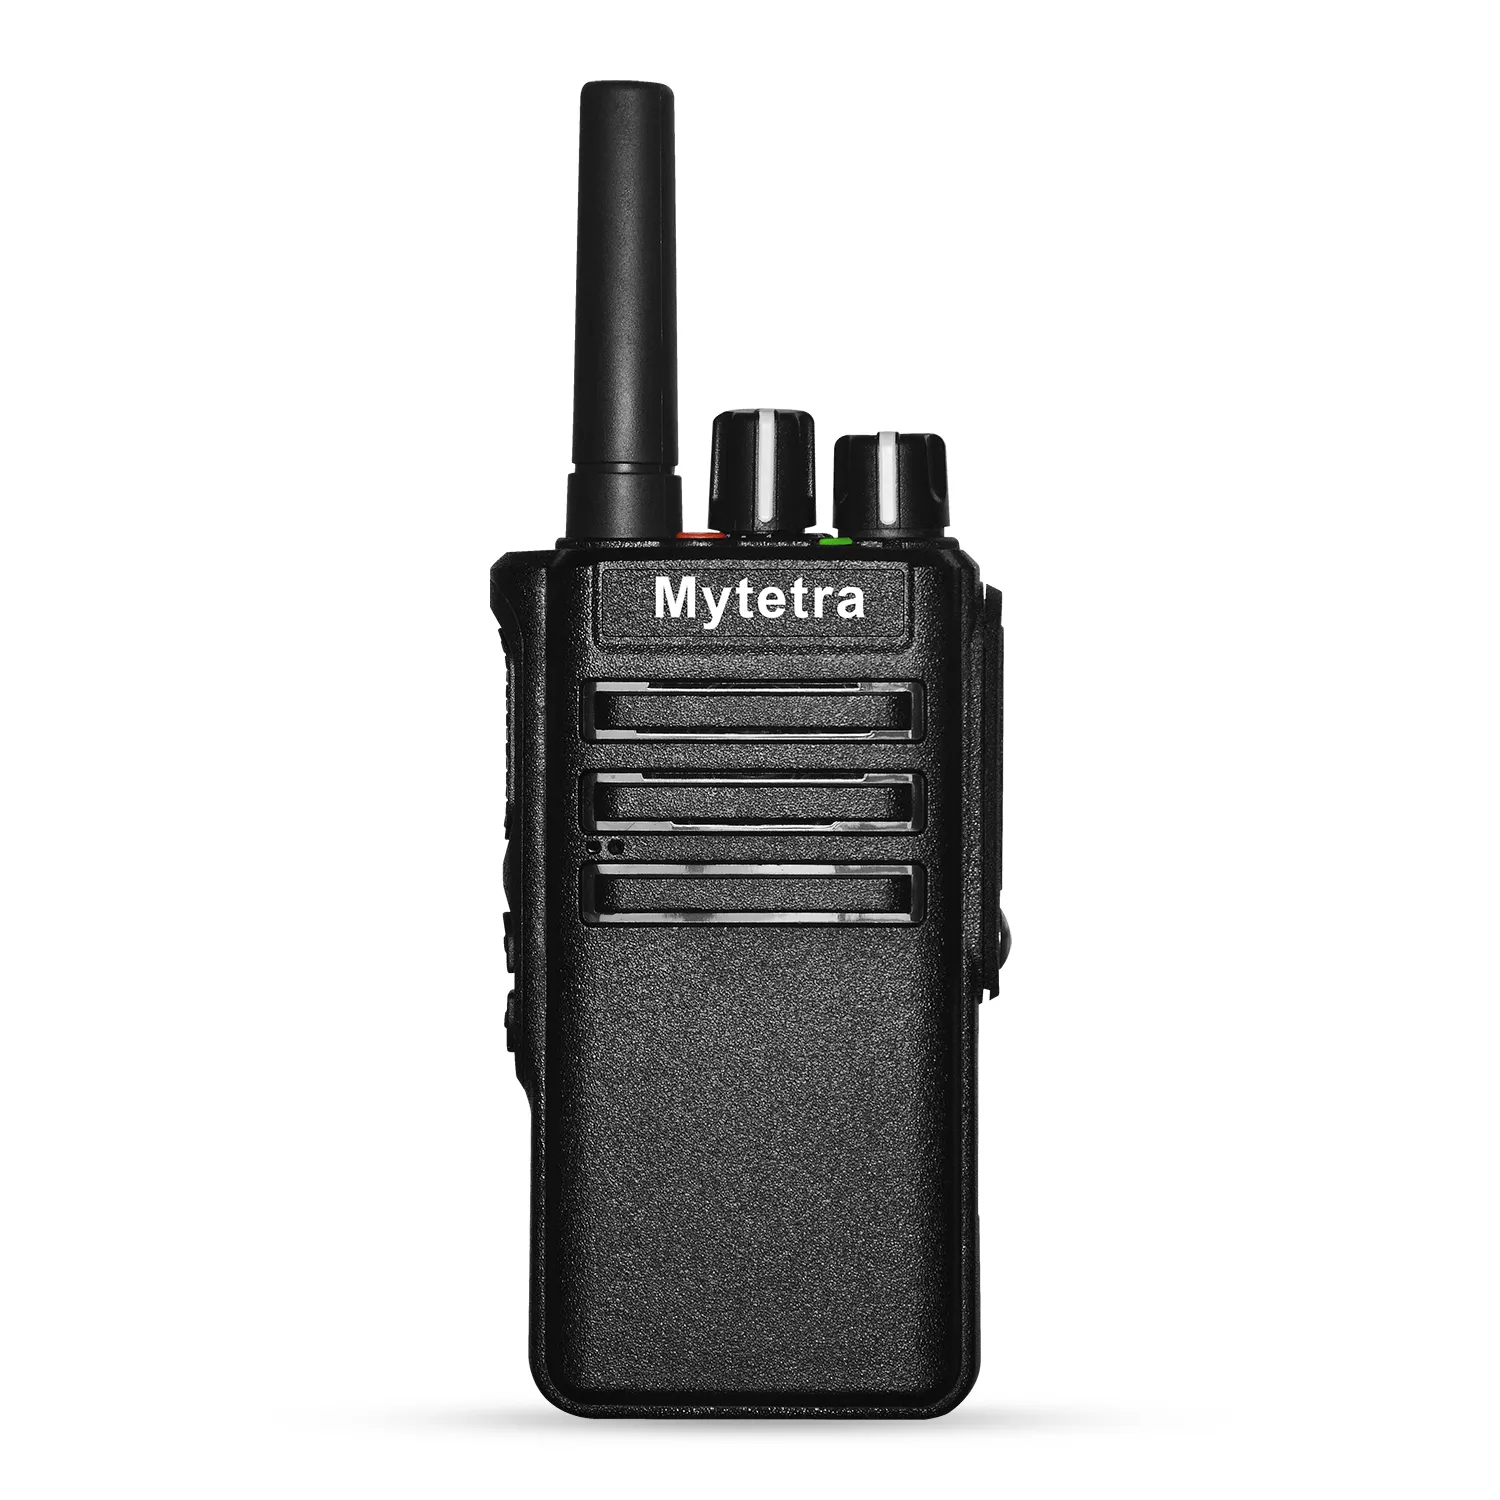 Kaliteli POC radyo Mytetra v120 WI-FI 4G